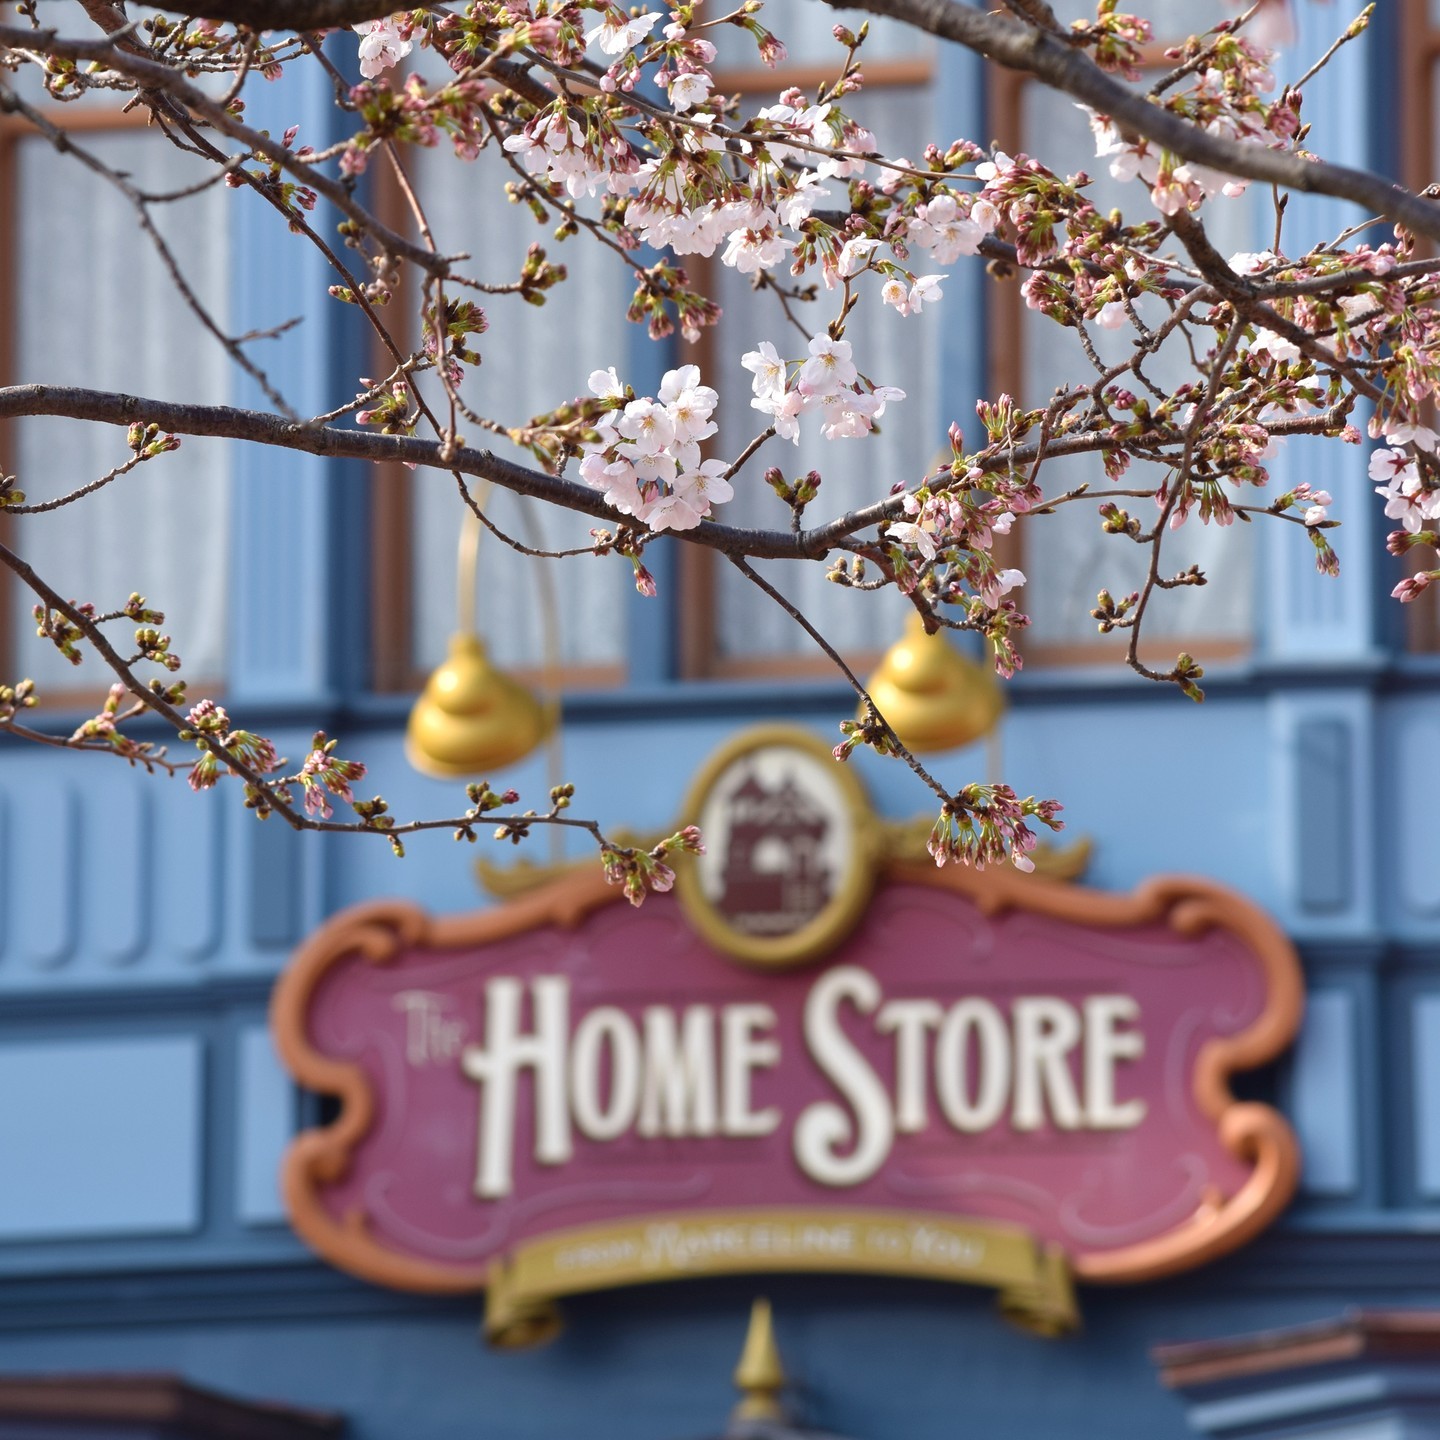 ⁡
東京ディズニーランド「ホームストア」近くの #ソメイヨシノ が咲きはじめました
⁡
これから満開を迎えるのが待ち遠しいですね。...